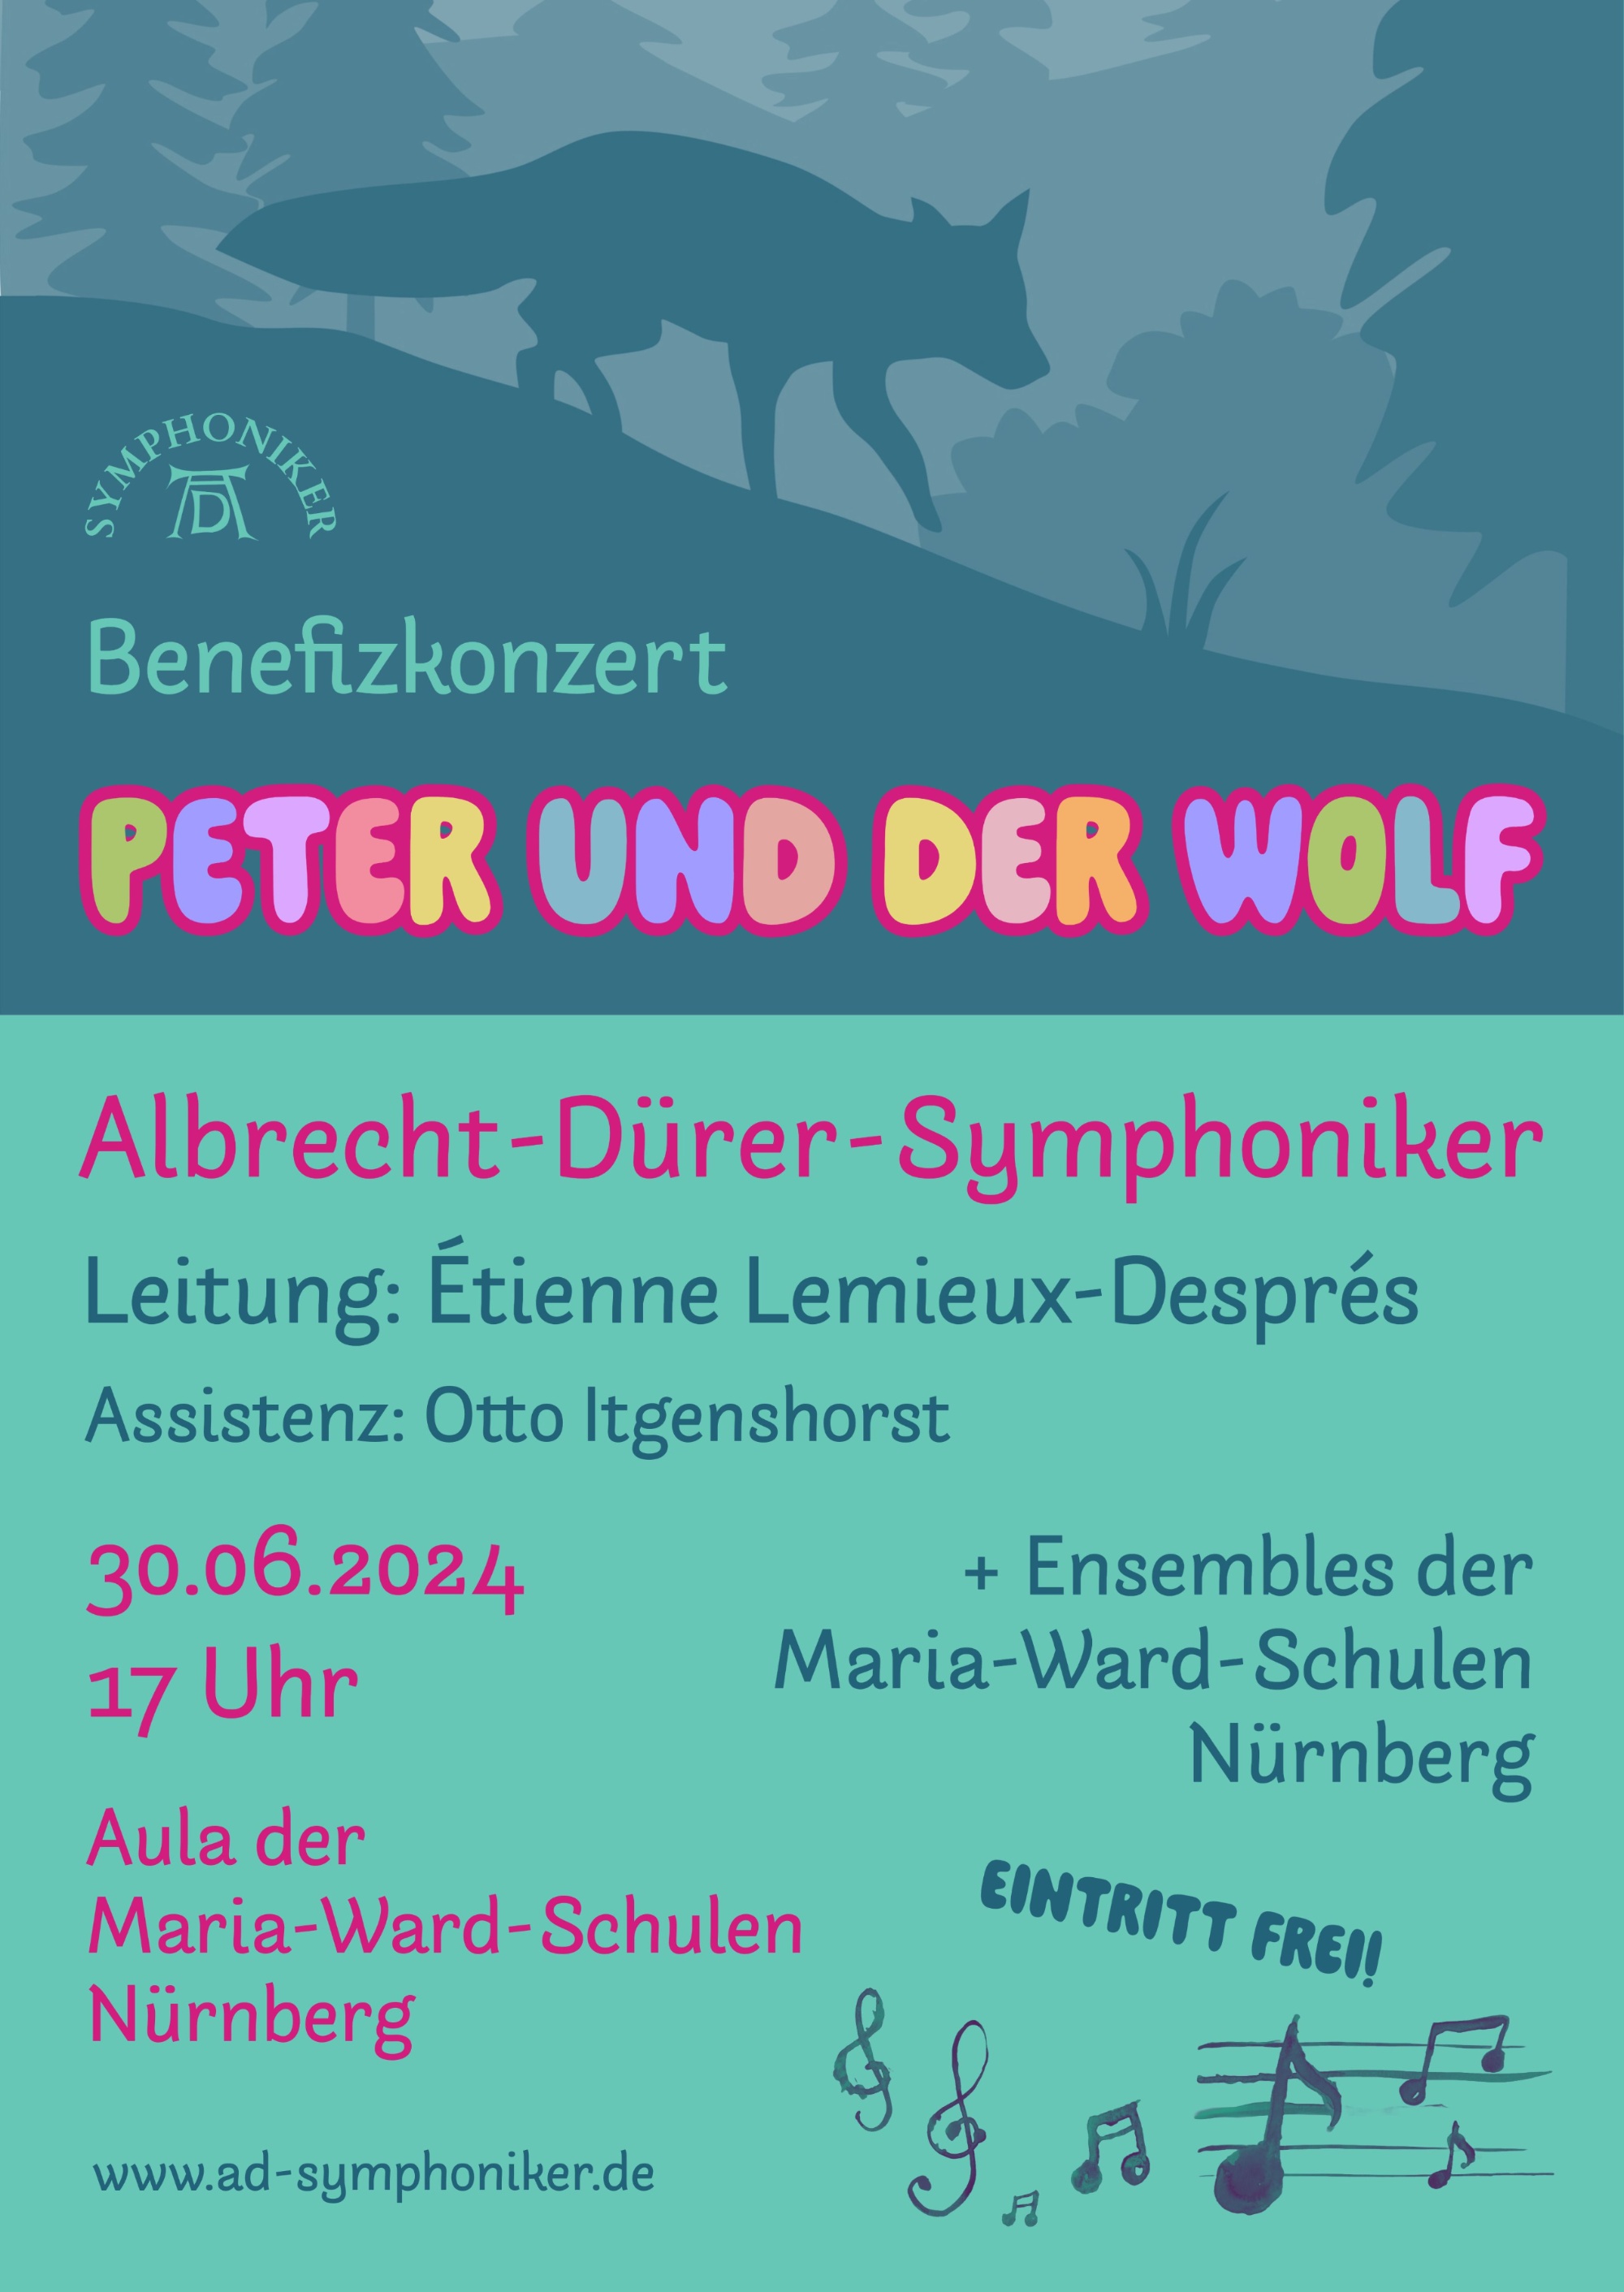 Peter_und_der_Wolf